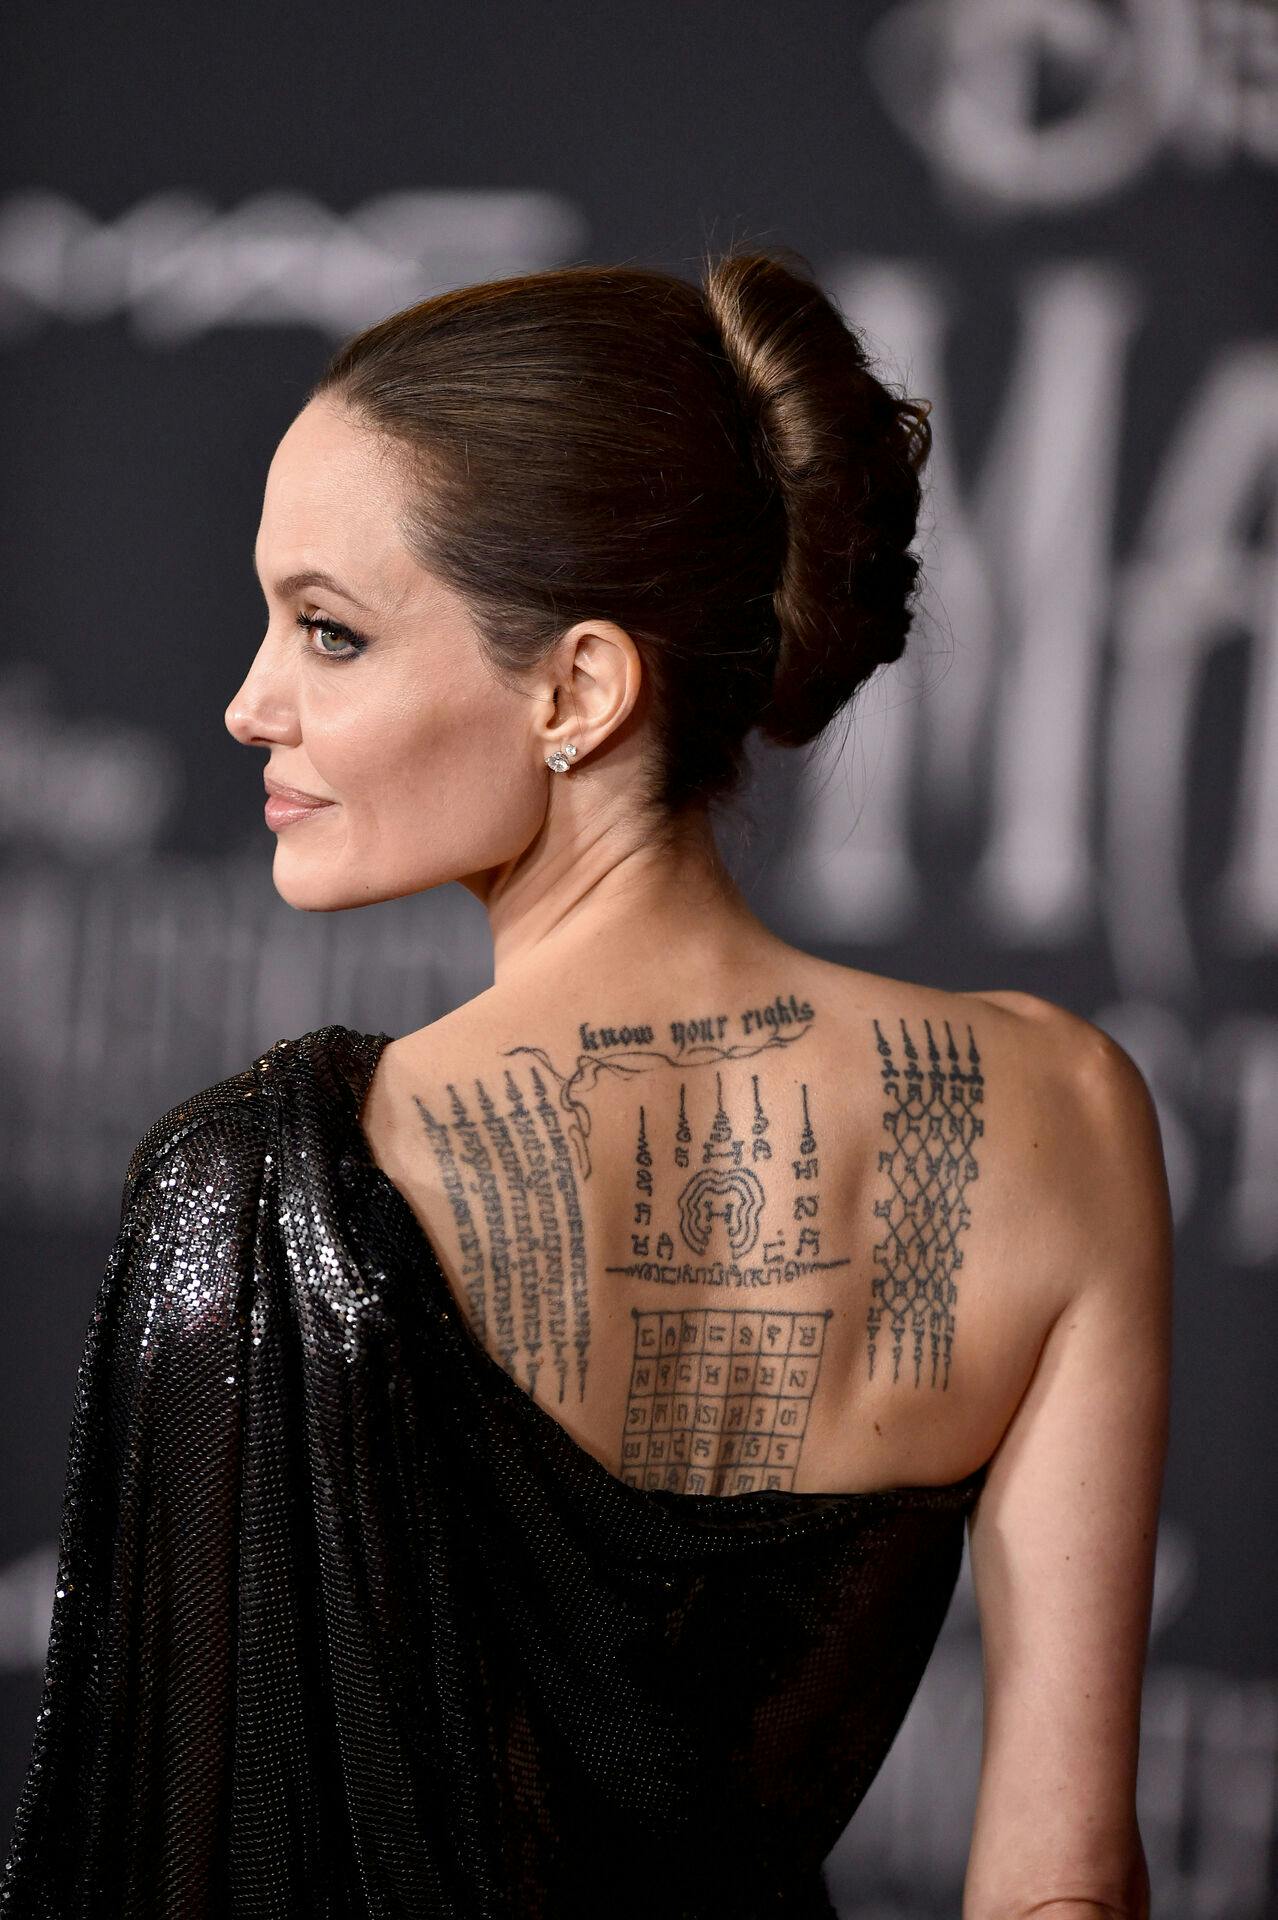 Mange af Angelina Jolies tatoveringer har en særlig betydning, så mon ikke også den nye fingertatovering besidder et hemmeligt budskab? 